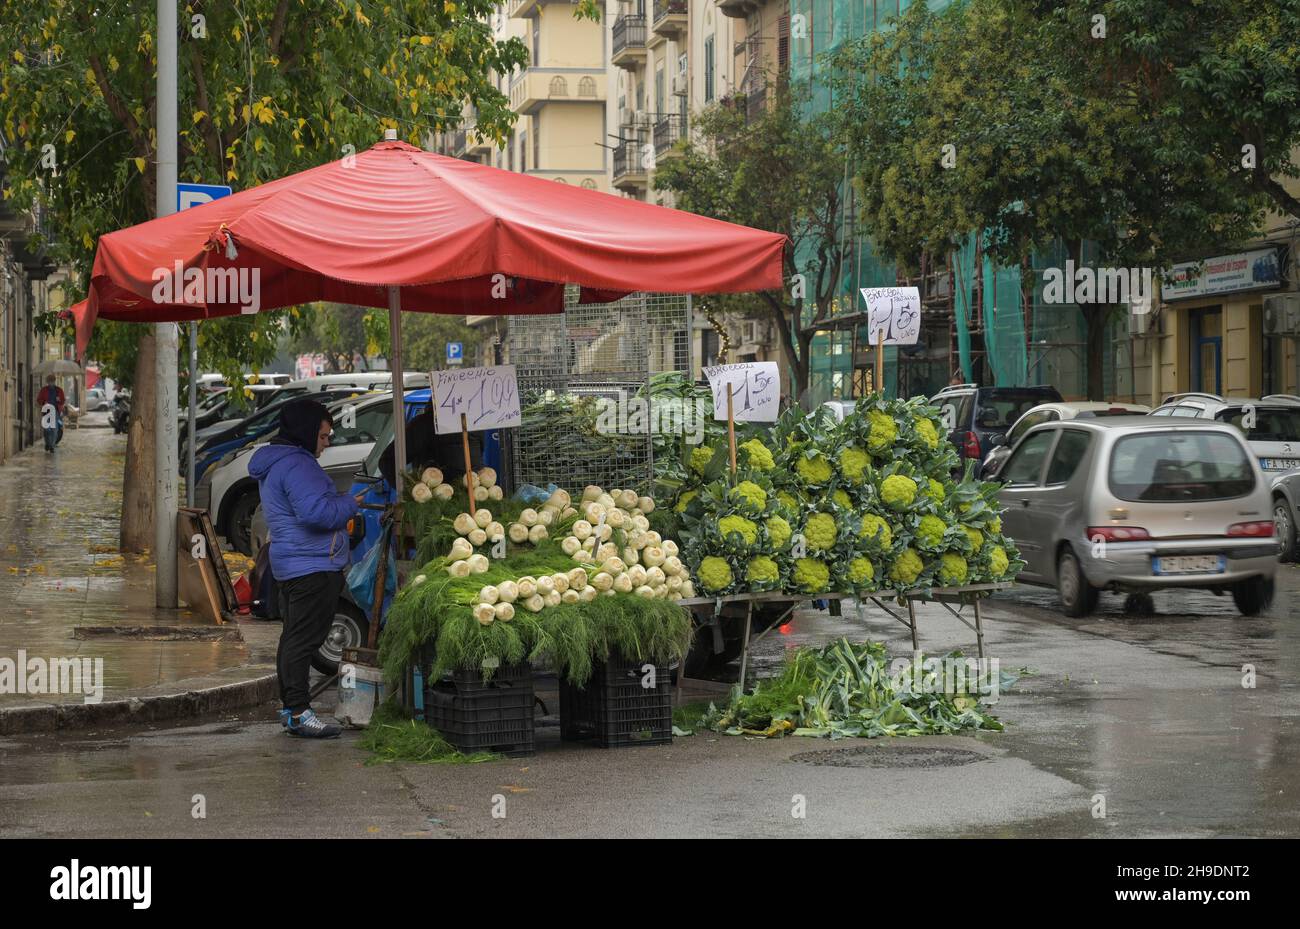 Marktstand auf der Straße, Broccoli und Fenchel, Palermo, Sizilien, Italien Stock Photo